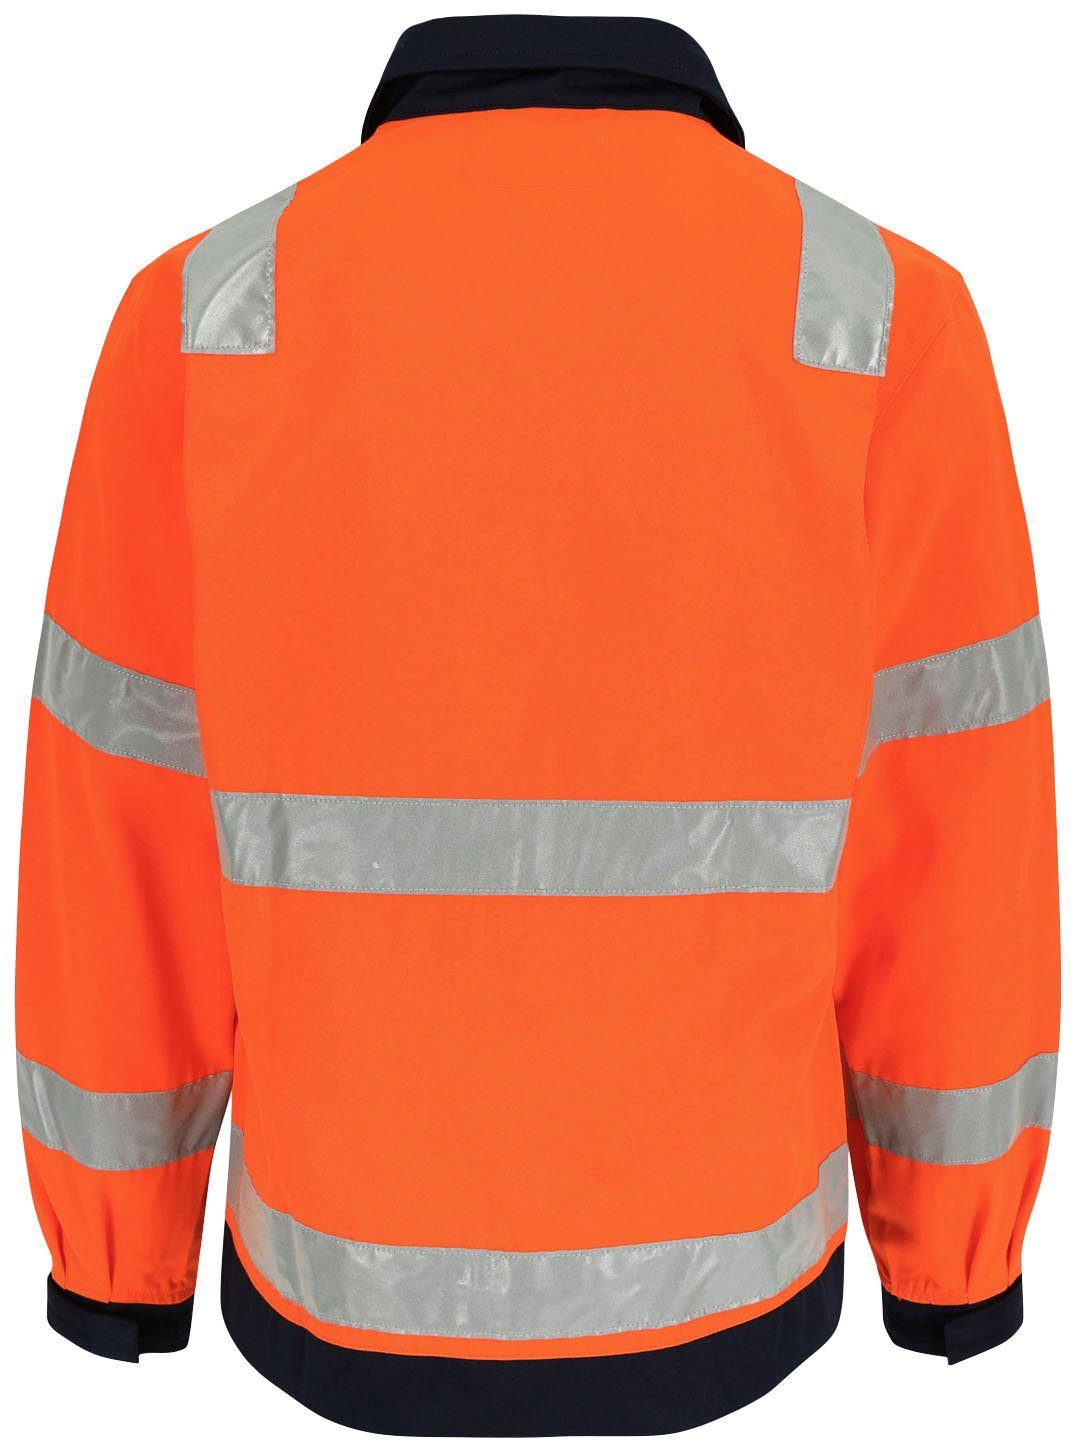 Herock Arbeitsjacke eintellbare Taschen, Hochwertig, orange 5cm Bündchen, reflektierende Jacke Hydros Bänder Hochsichtbar 5